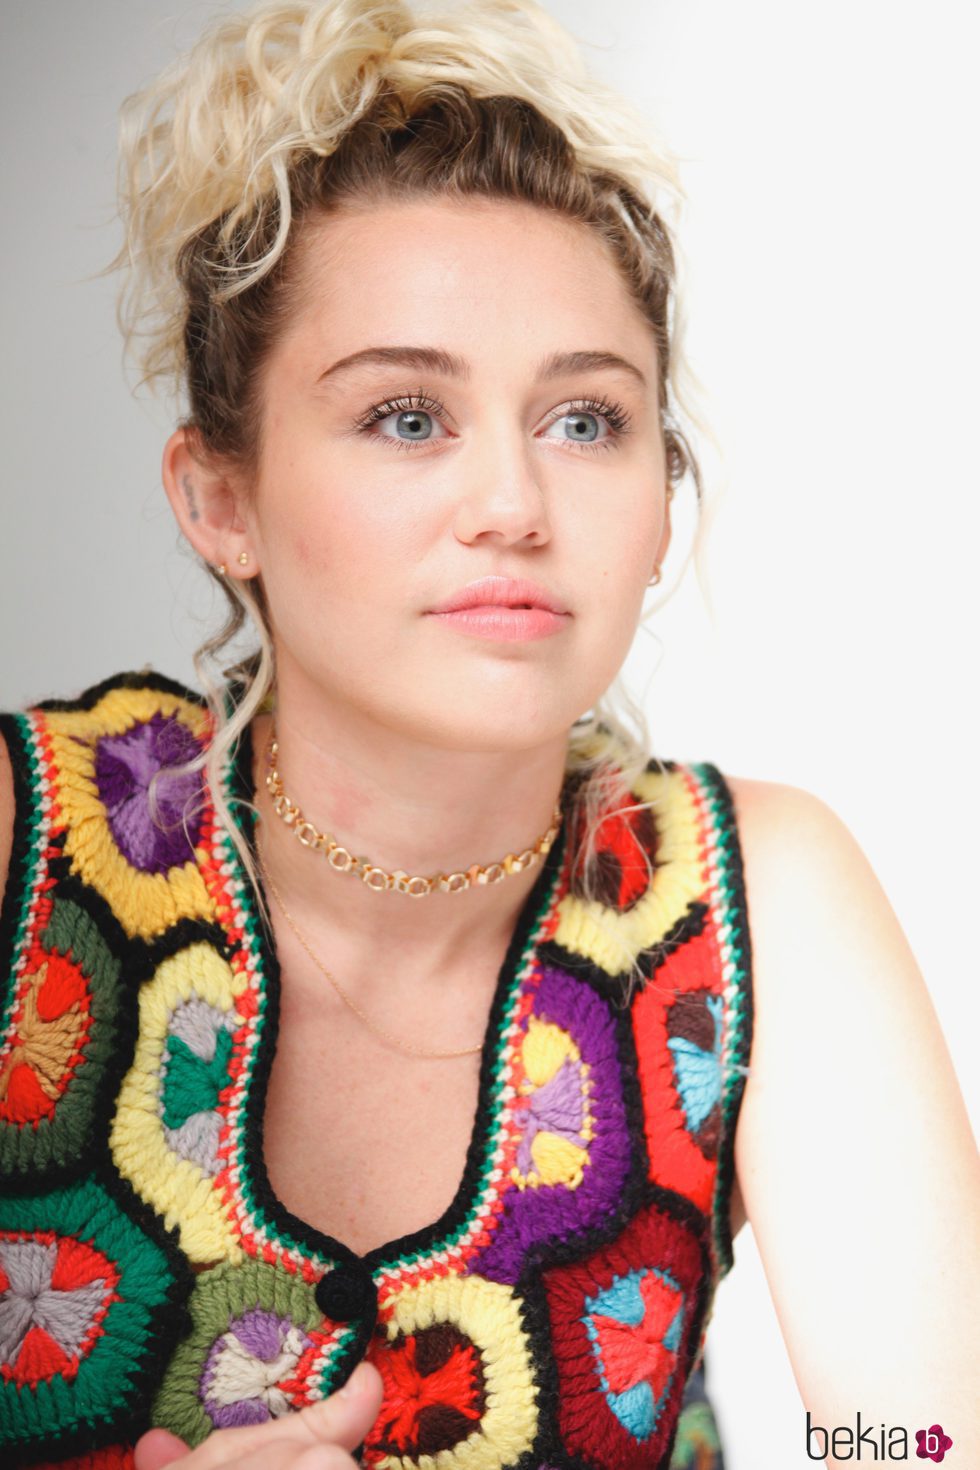 Miley Cyrus apuesta por el look natural con unos labios nude